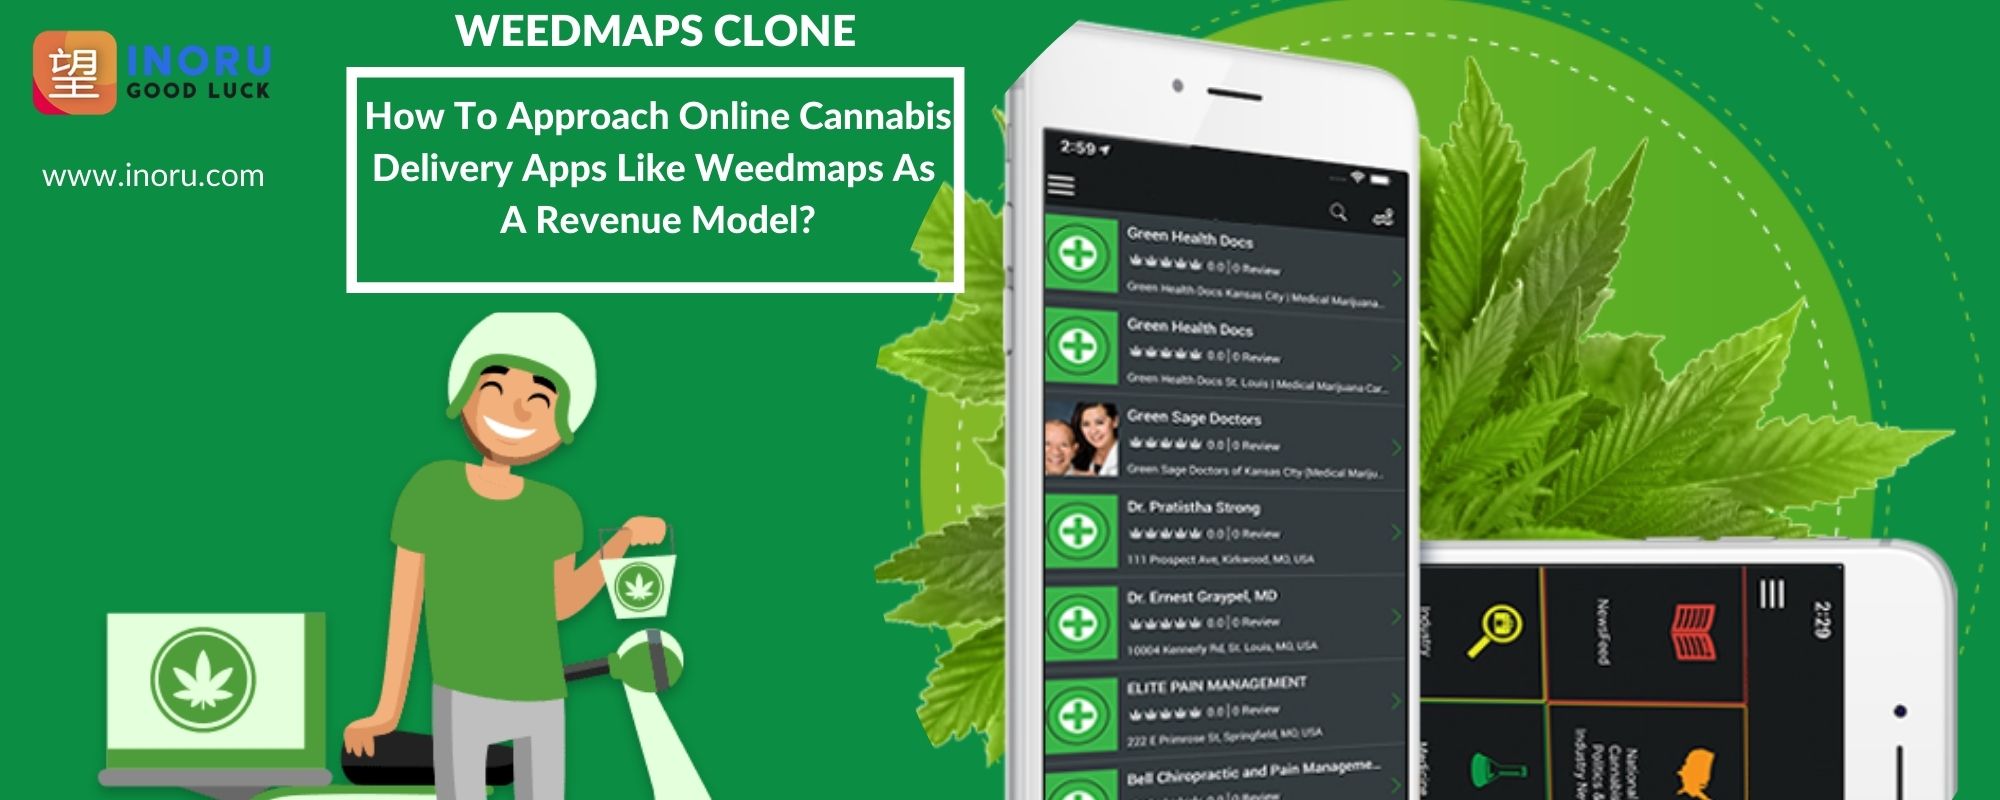 Weedmaps Clone